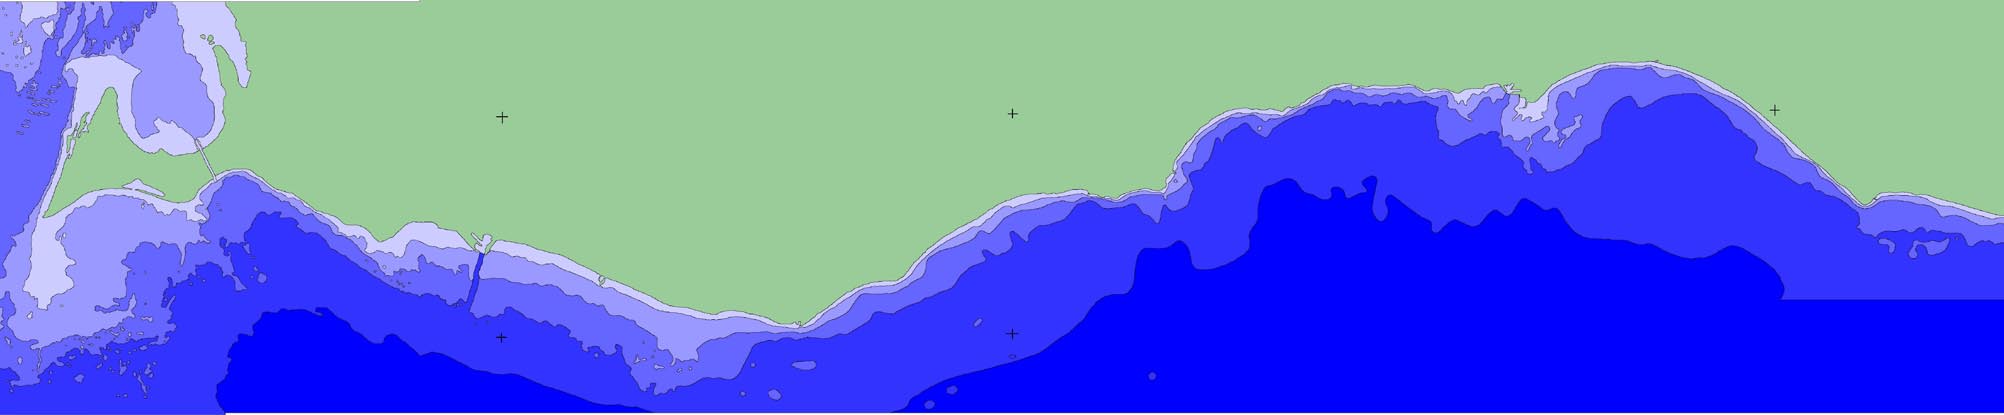 MATERIAL CH METDER Hydrografi Provtagningsstationen, kallad Falsterbo, är belägen ca 4 distansminuter söder om Falsterbokanalen med position N55 19,52 E12 56,47 (WGS-84) (Karta 1).